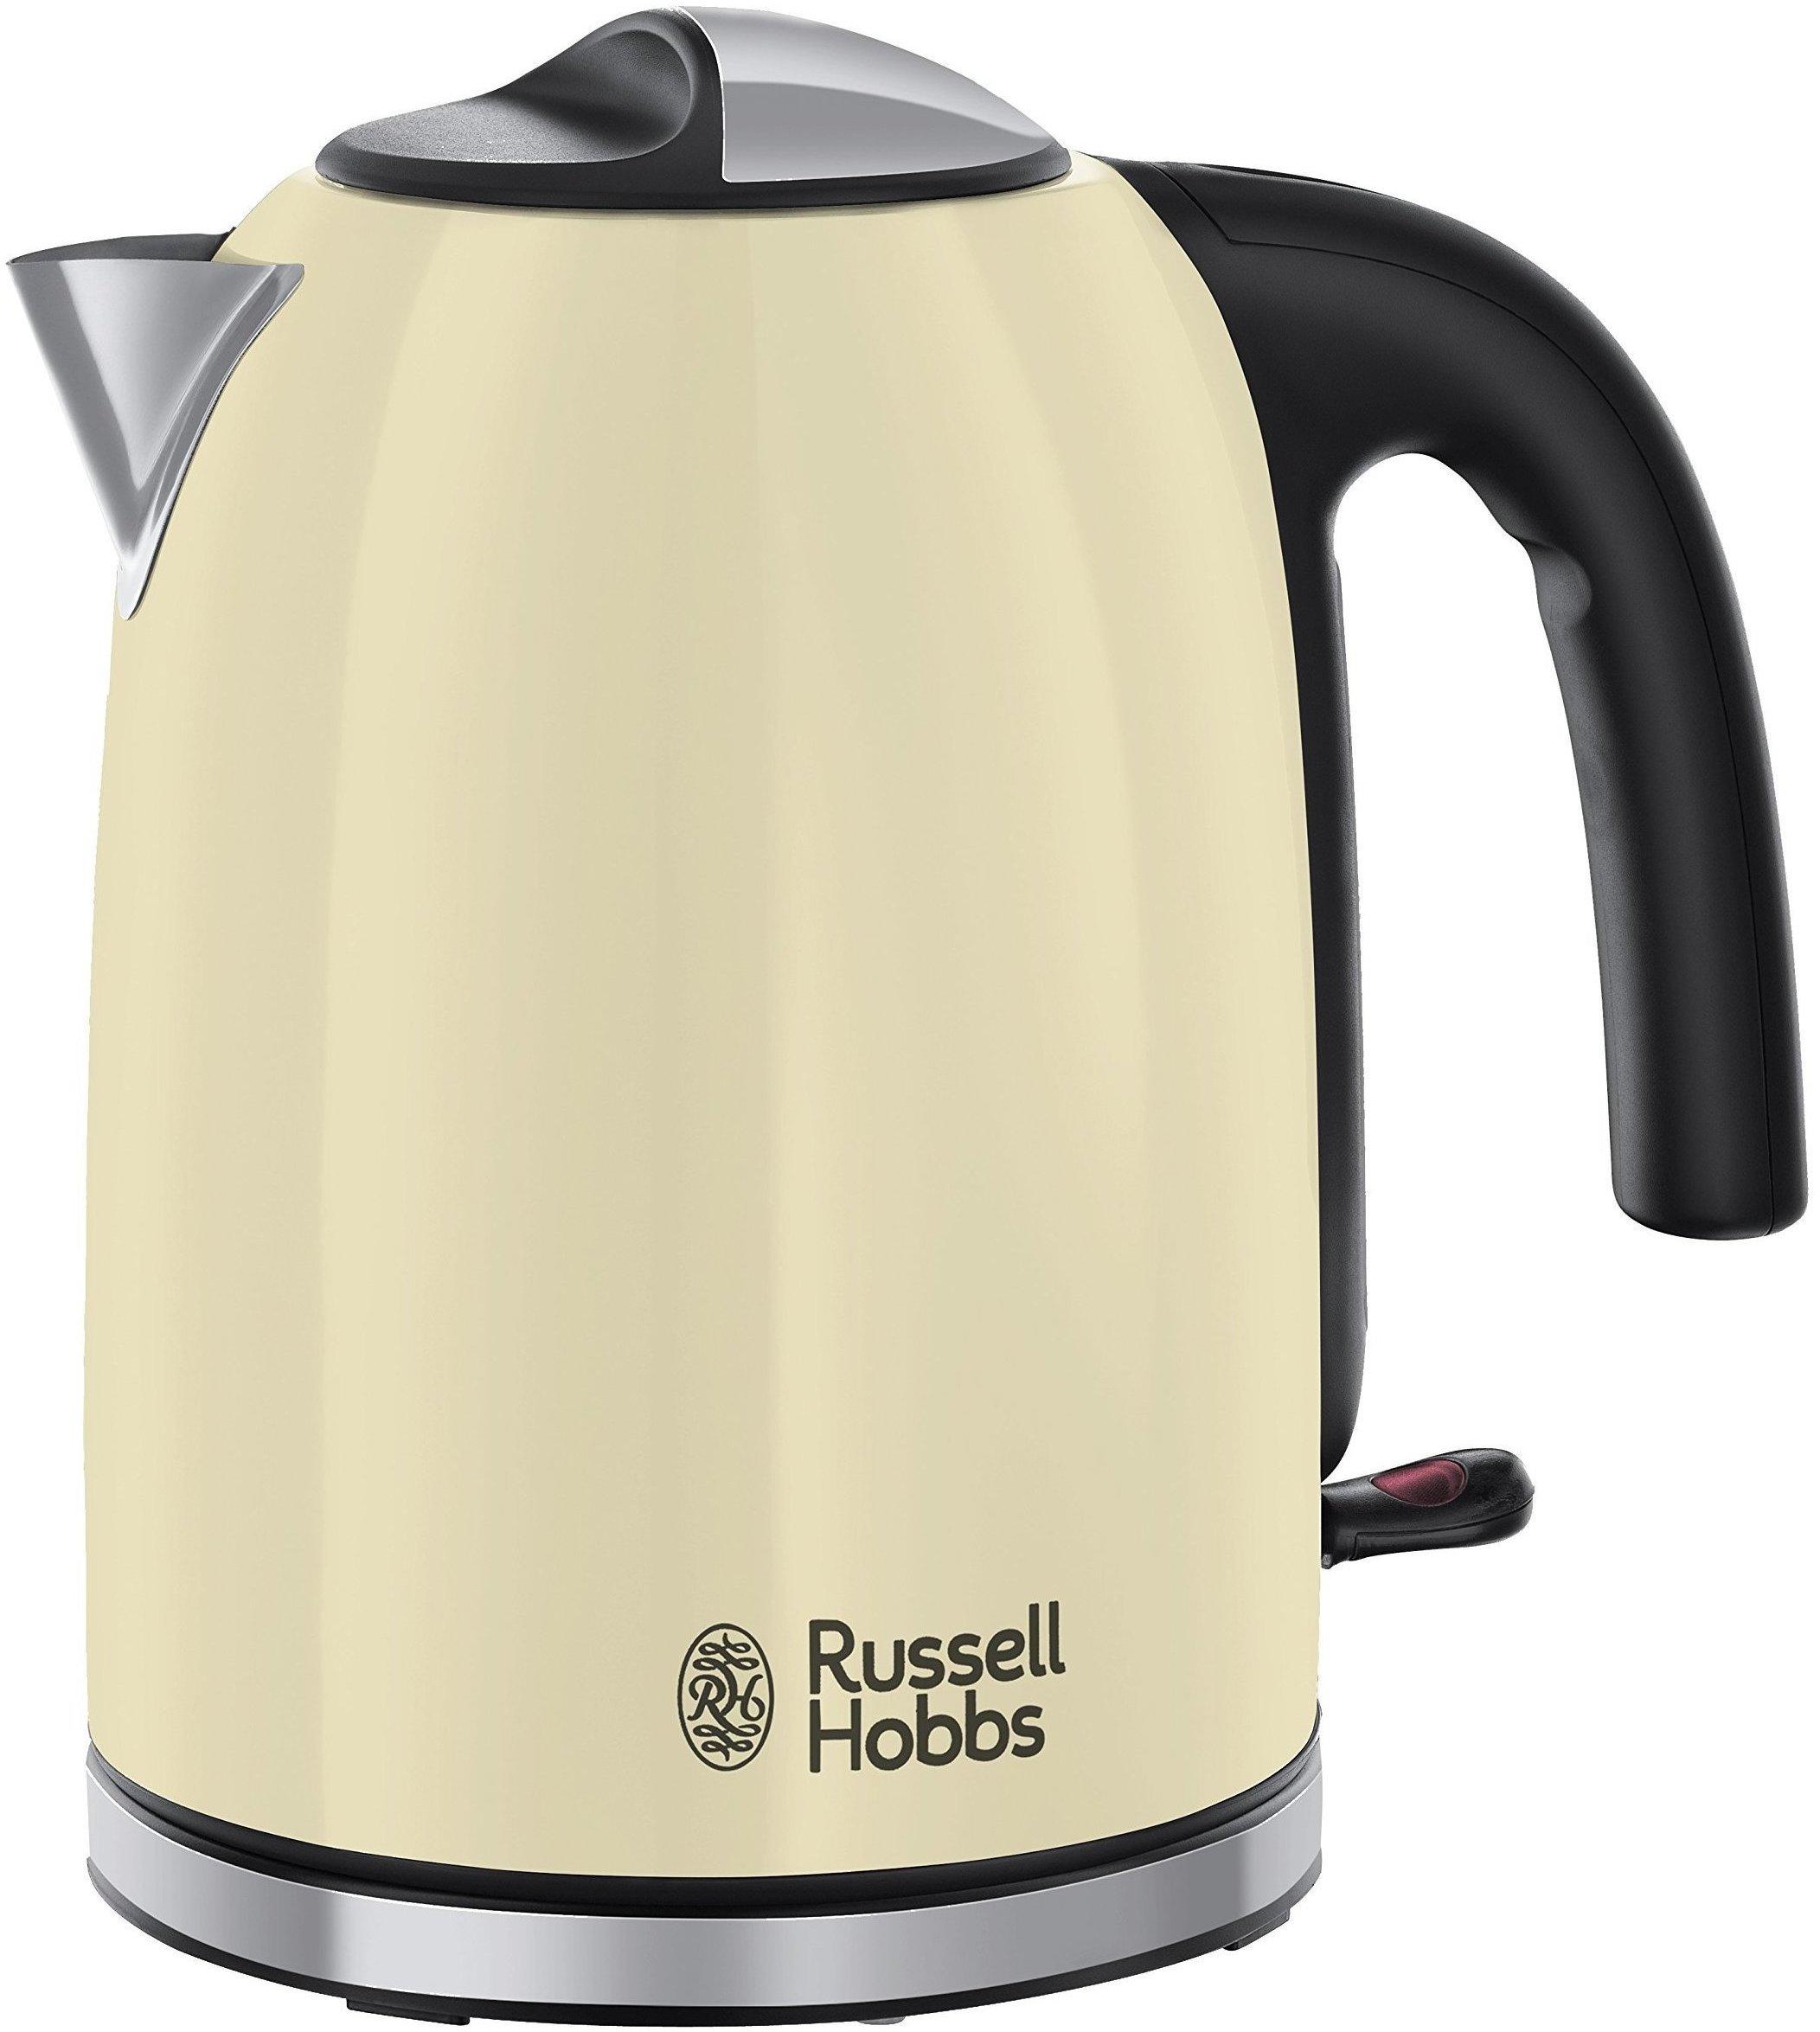 Russell Hobbs Colours Plus+ classic cream 20415-70 Erfahrungen 4.3/5 Sternen